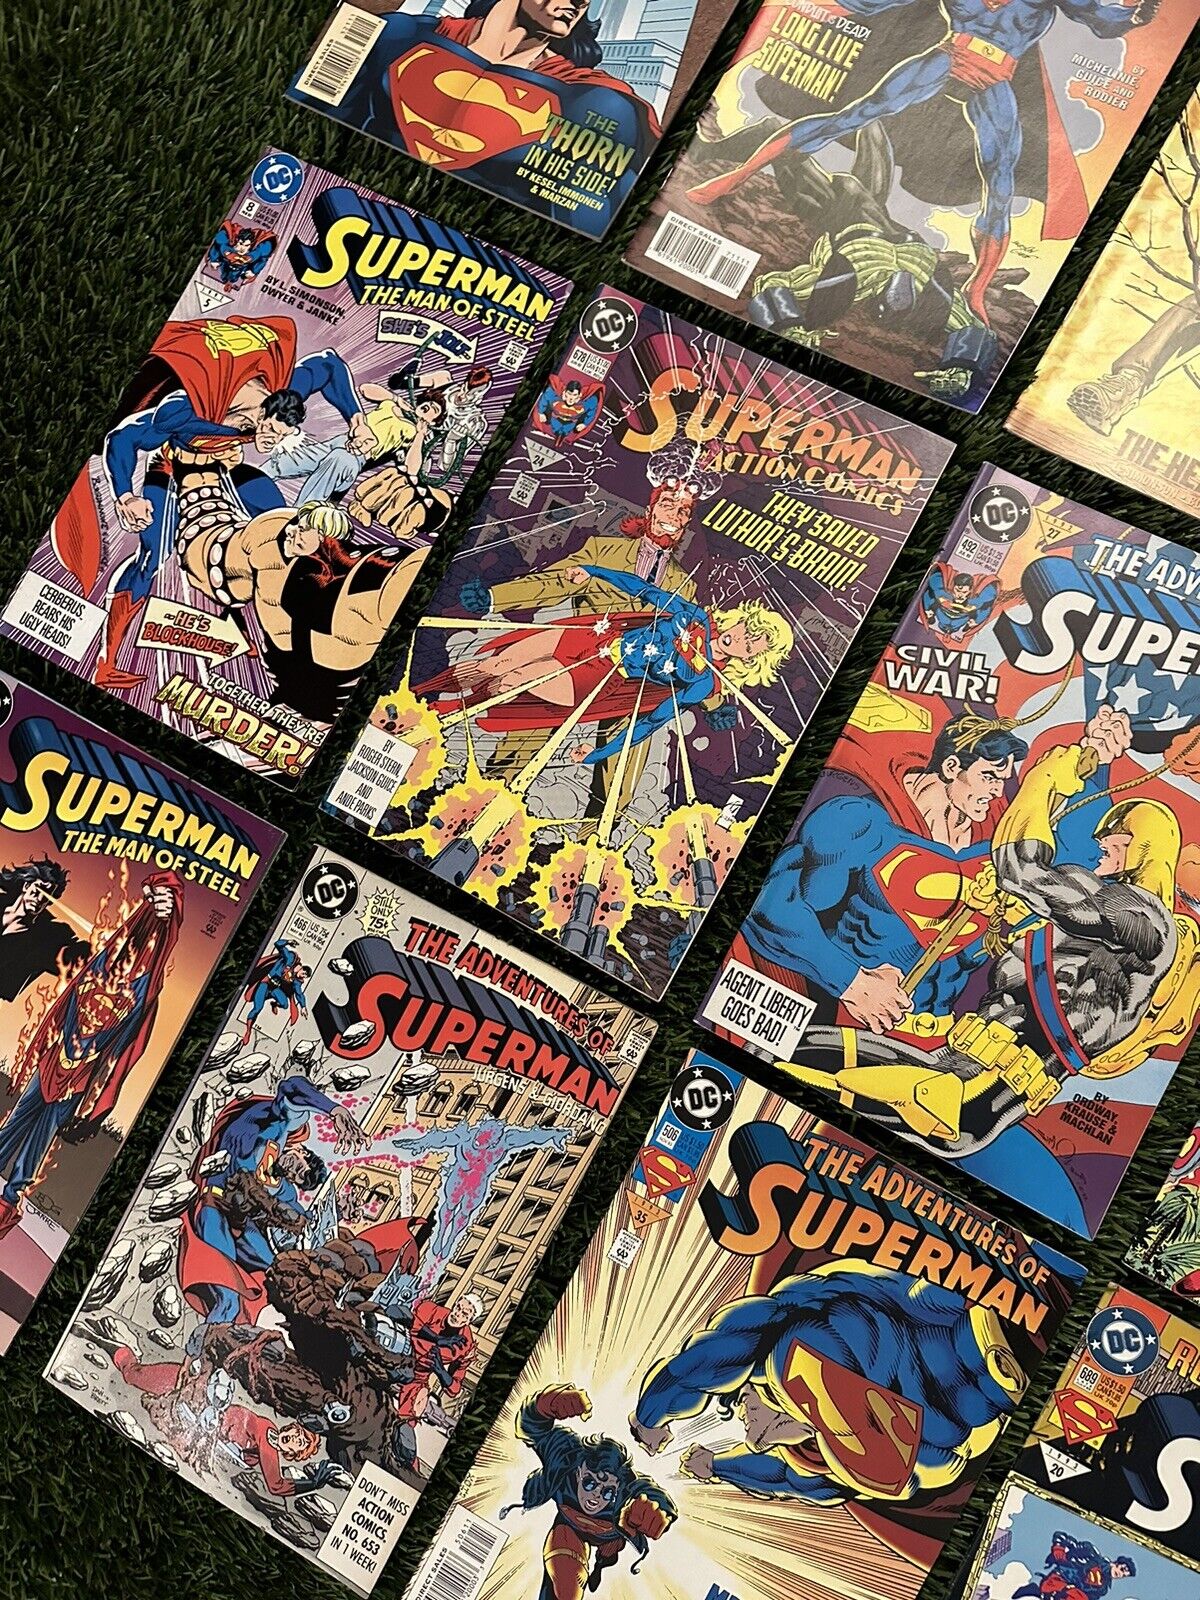 VTG 90’s Superman DC Comics- Rare editions/Mint Condition (15 Comics)